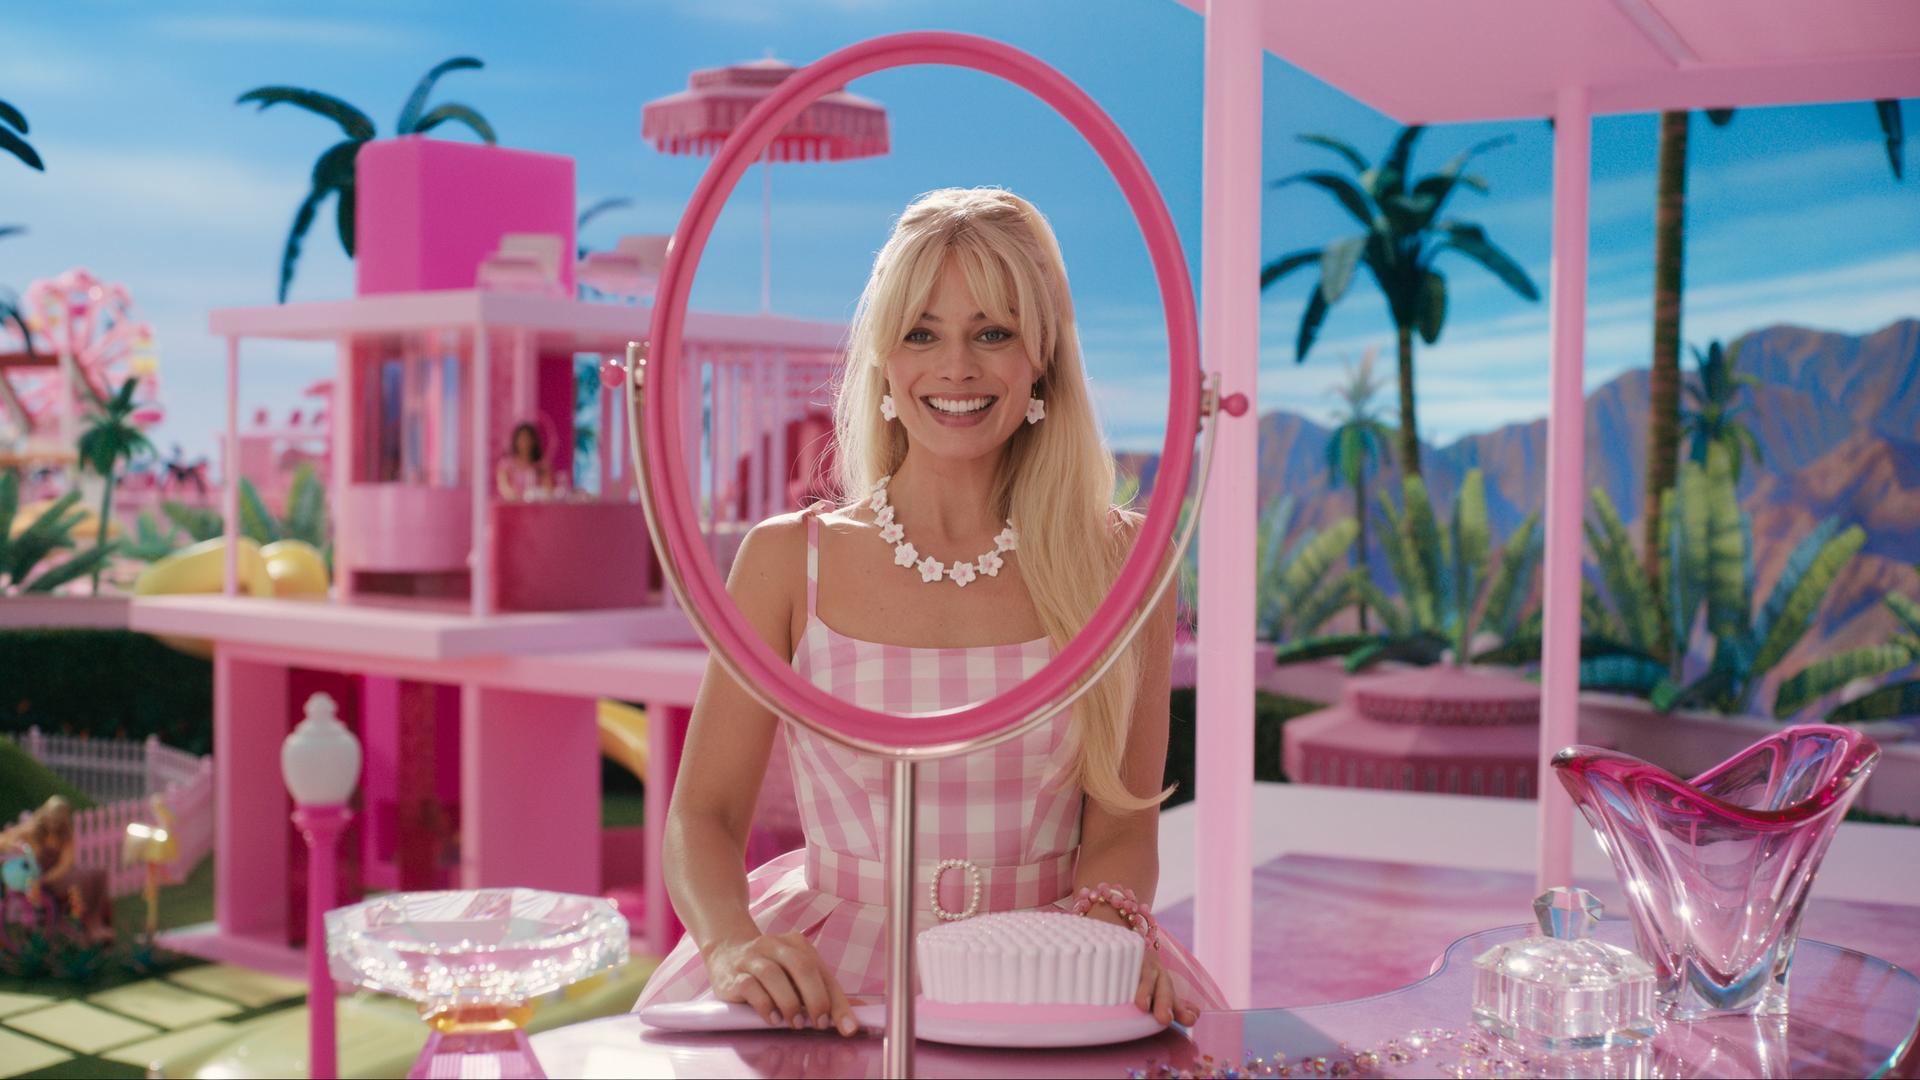 Margot Robbie posiert mit strahlendem Lächeln in der Rolle der Stereotyp-Barbie im Film "Barbie" von US-Regisseurin Greta Gerwig.